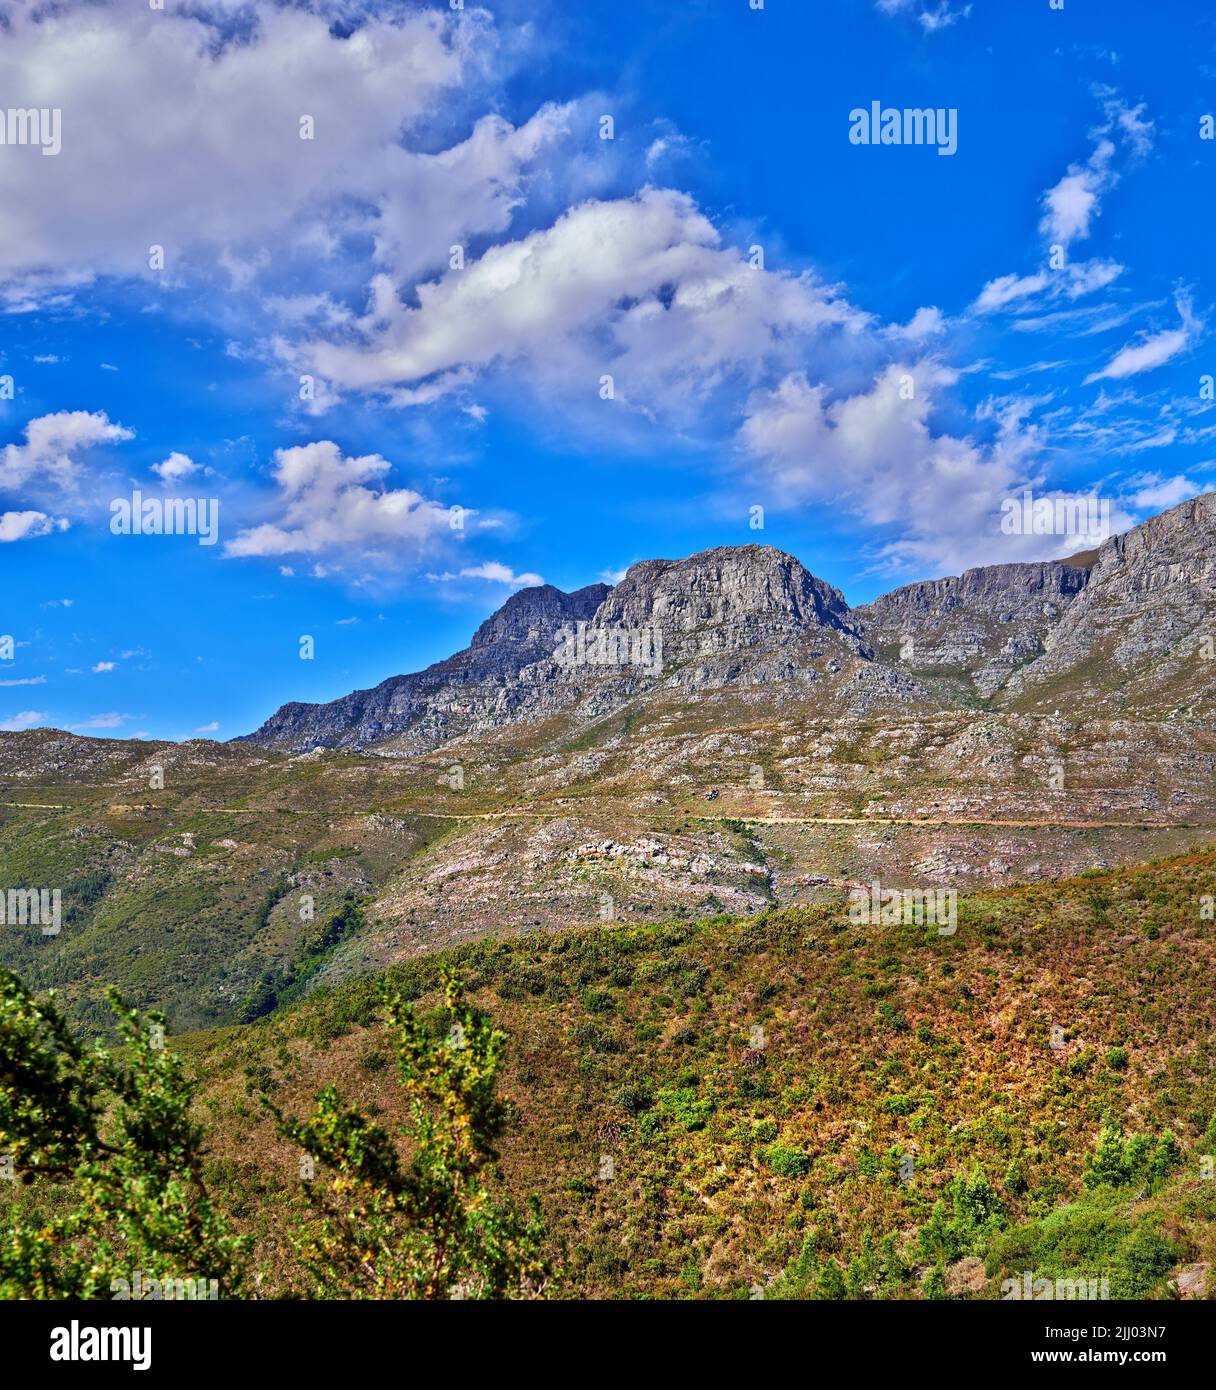 Belle montagne dans la paisible terre rocheuse lors d'une journée ensoleillée au Cap. Terre vibrante avec des buissons verts luxuriants et des plantes qui grandissent avec harmonie dans la nature Banque D'Images